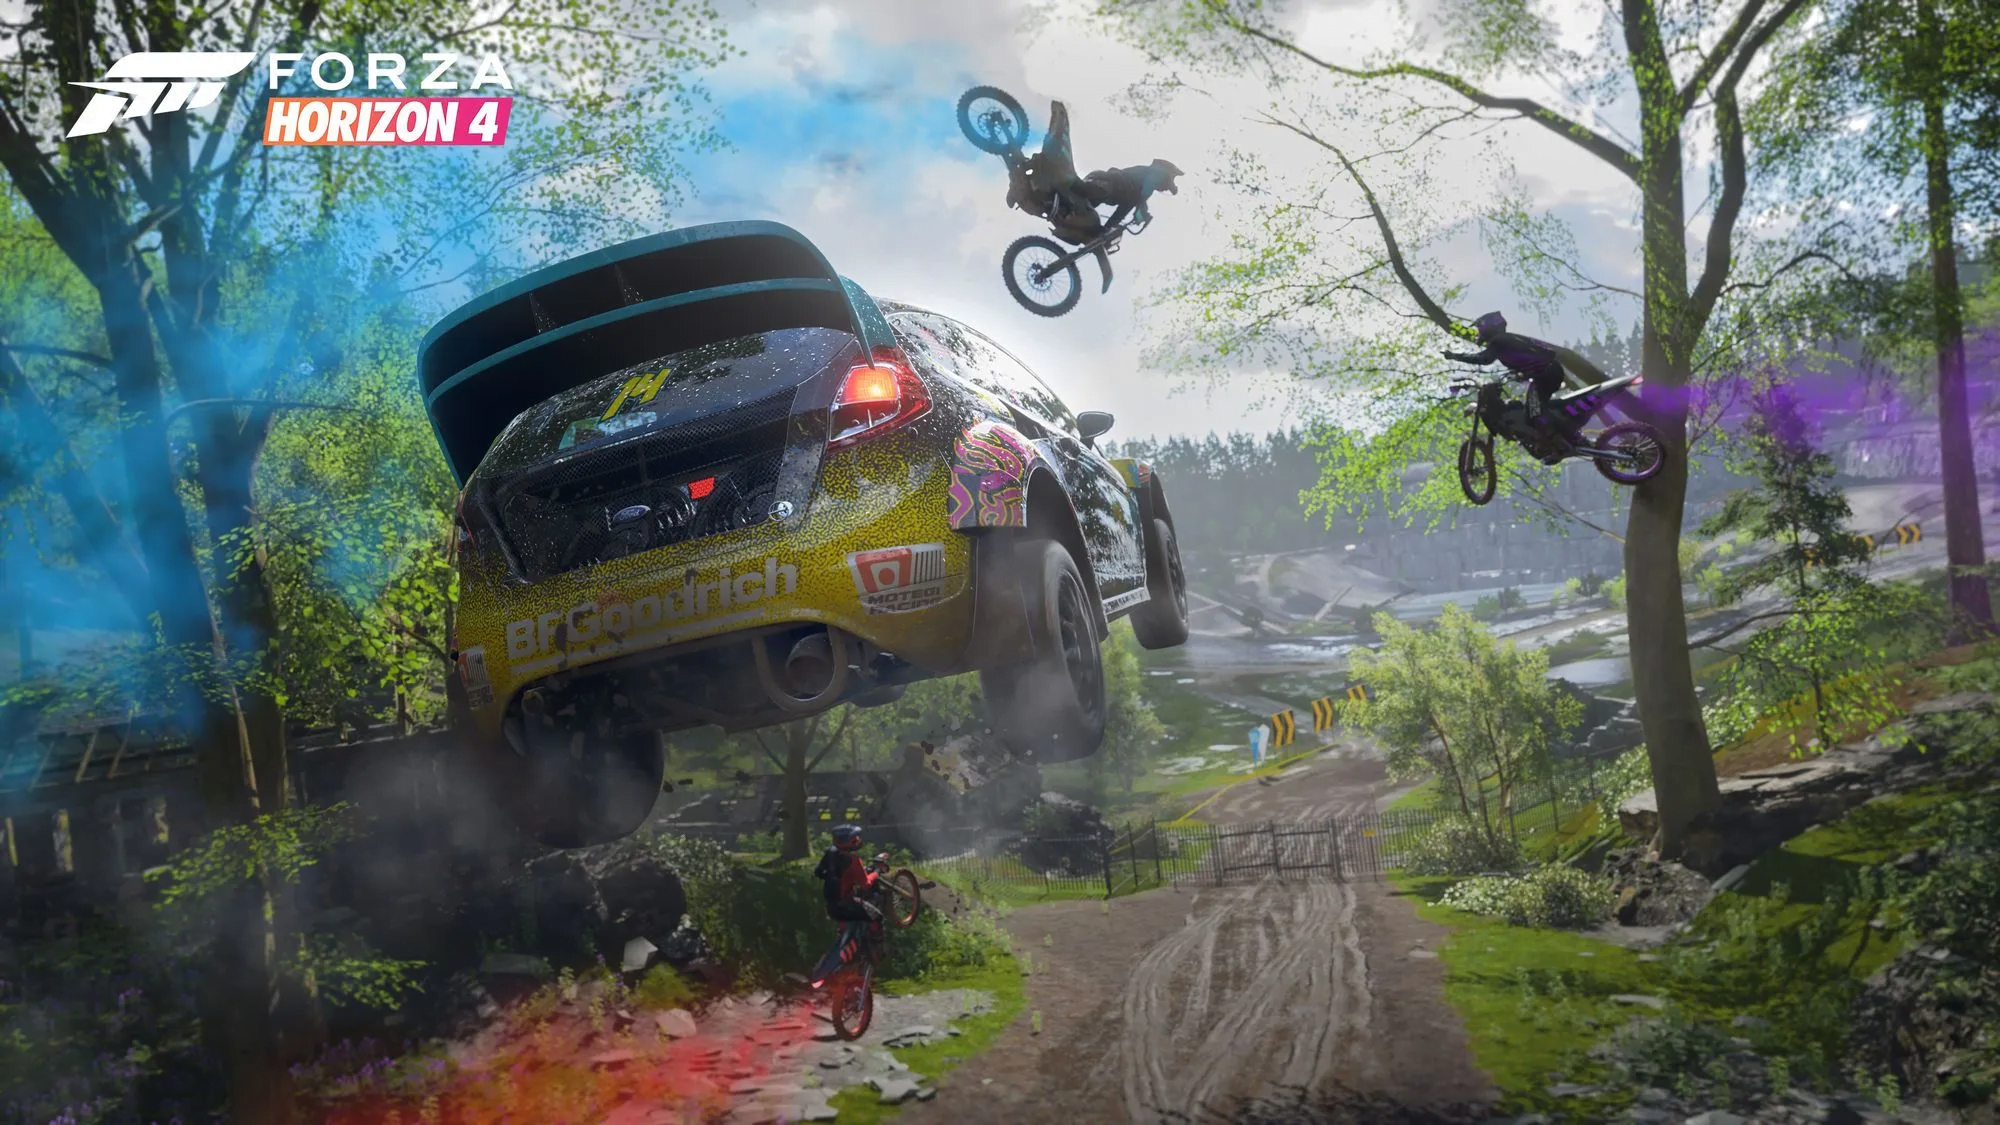 Samochód rajdowy w locie oraz motocykliści wykonujący akrobacje w grze Forza Horizon 4 w lesie.